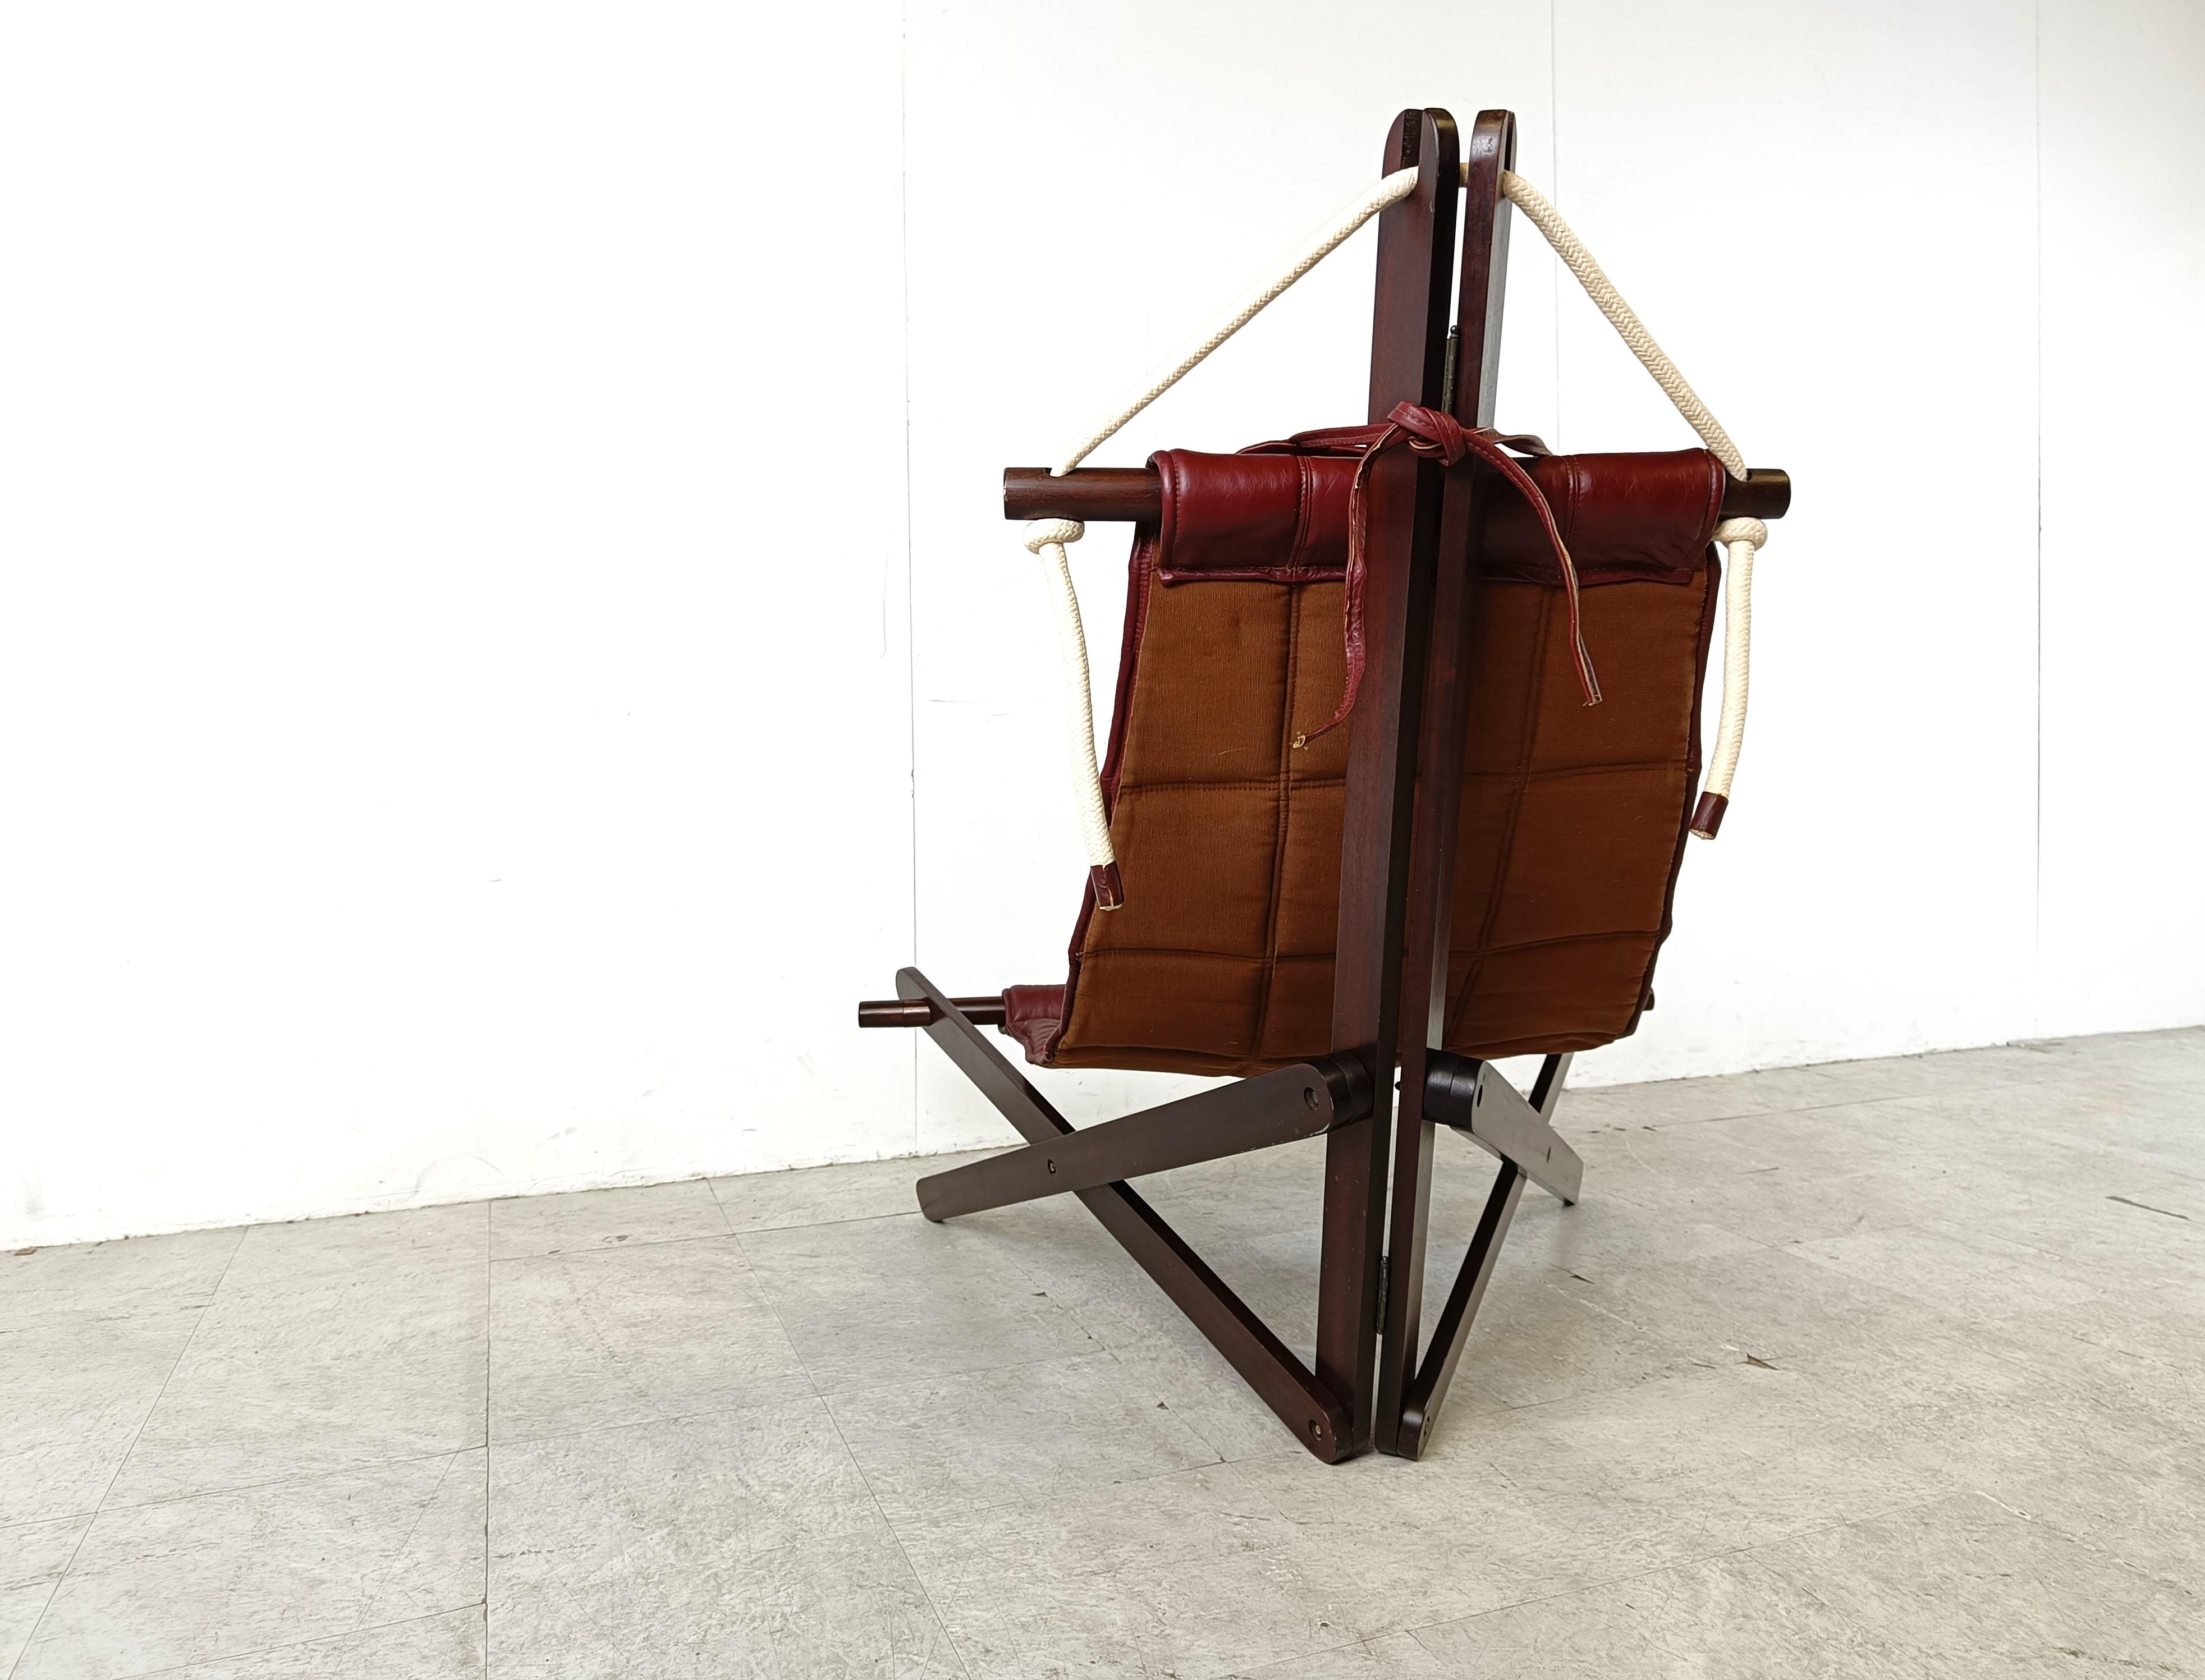 Collectional Lounge Chair, entworfen von Dominic Michaelis für Moveis Corazza, bestehend aus einem skulpturalen Holzrahmen mit einem Sitz aus rotem Leder, der mit Schnüren befestigt ist.

Das maritim inspirierte Design stellt ein Segel mit Rahmen